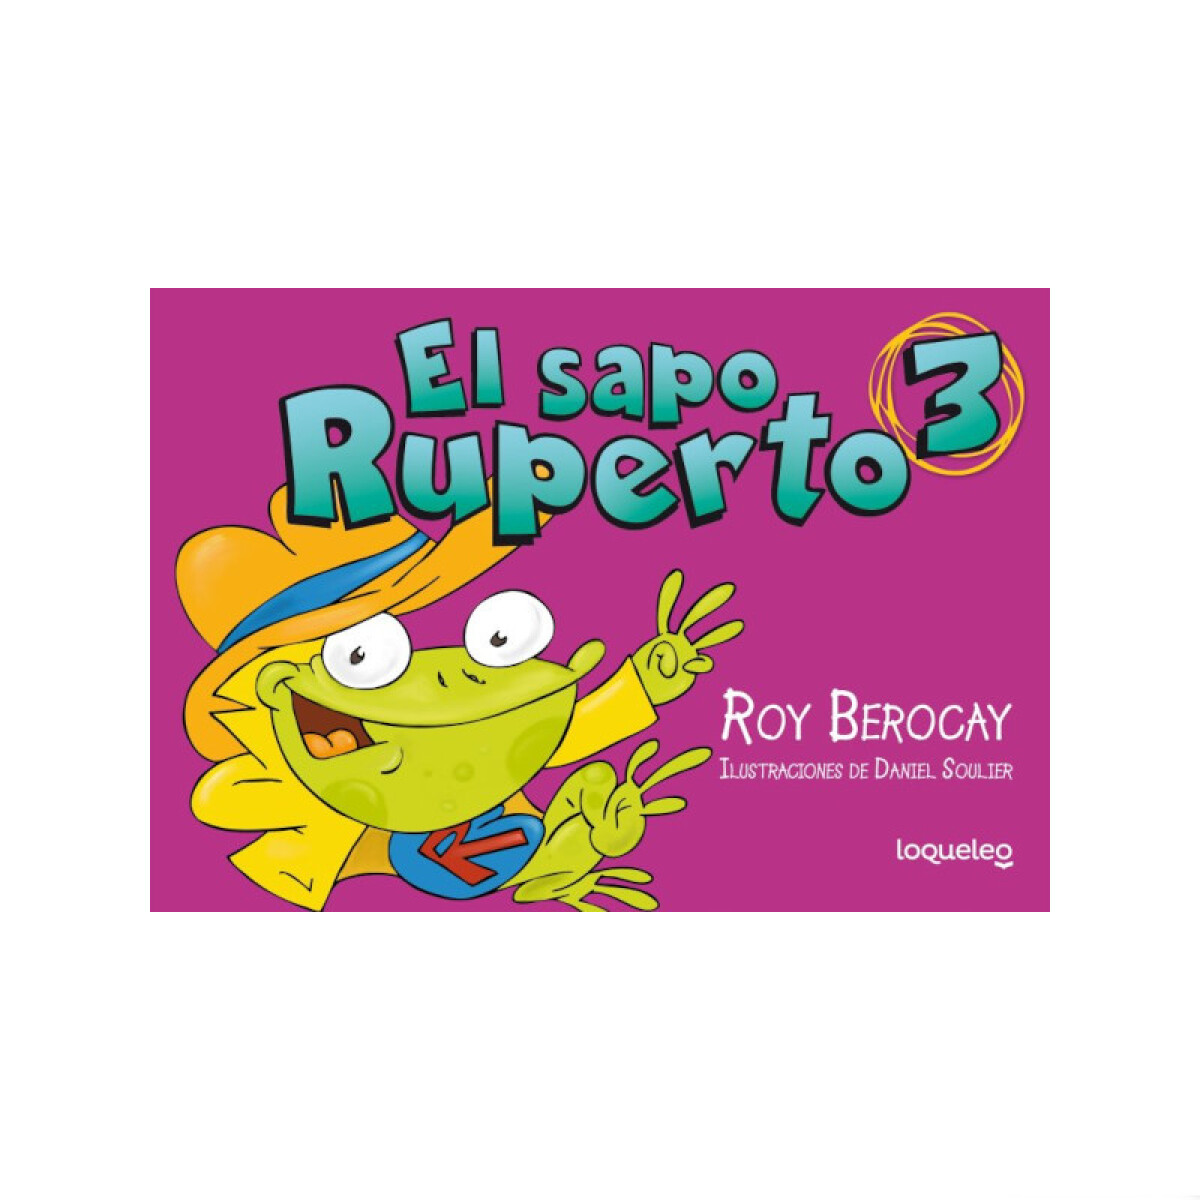 El sapo Ruperto - Cómic 3 - Roy Berocay 